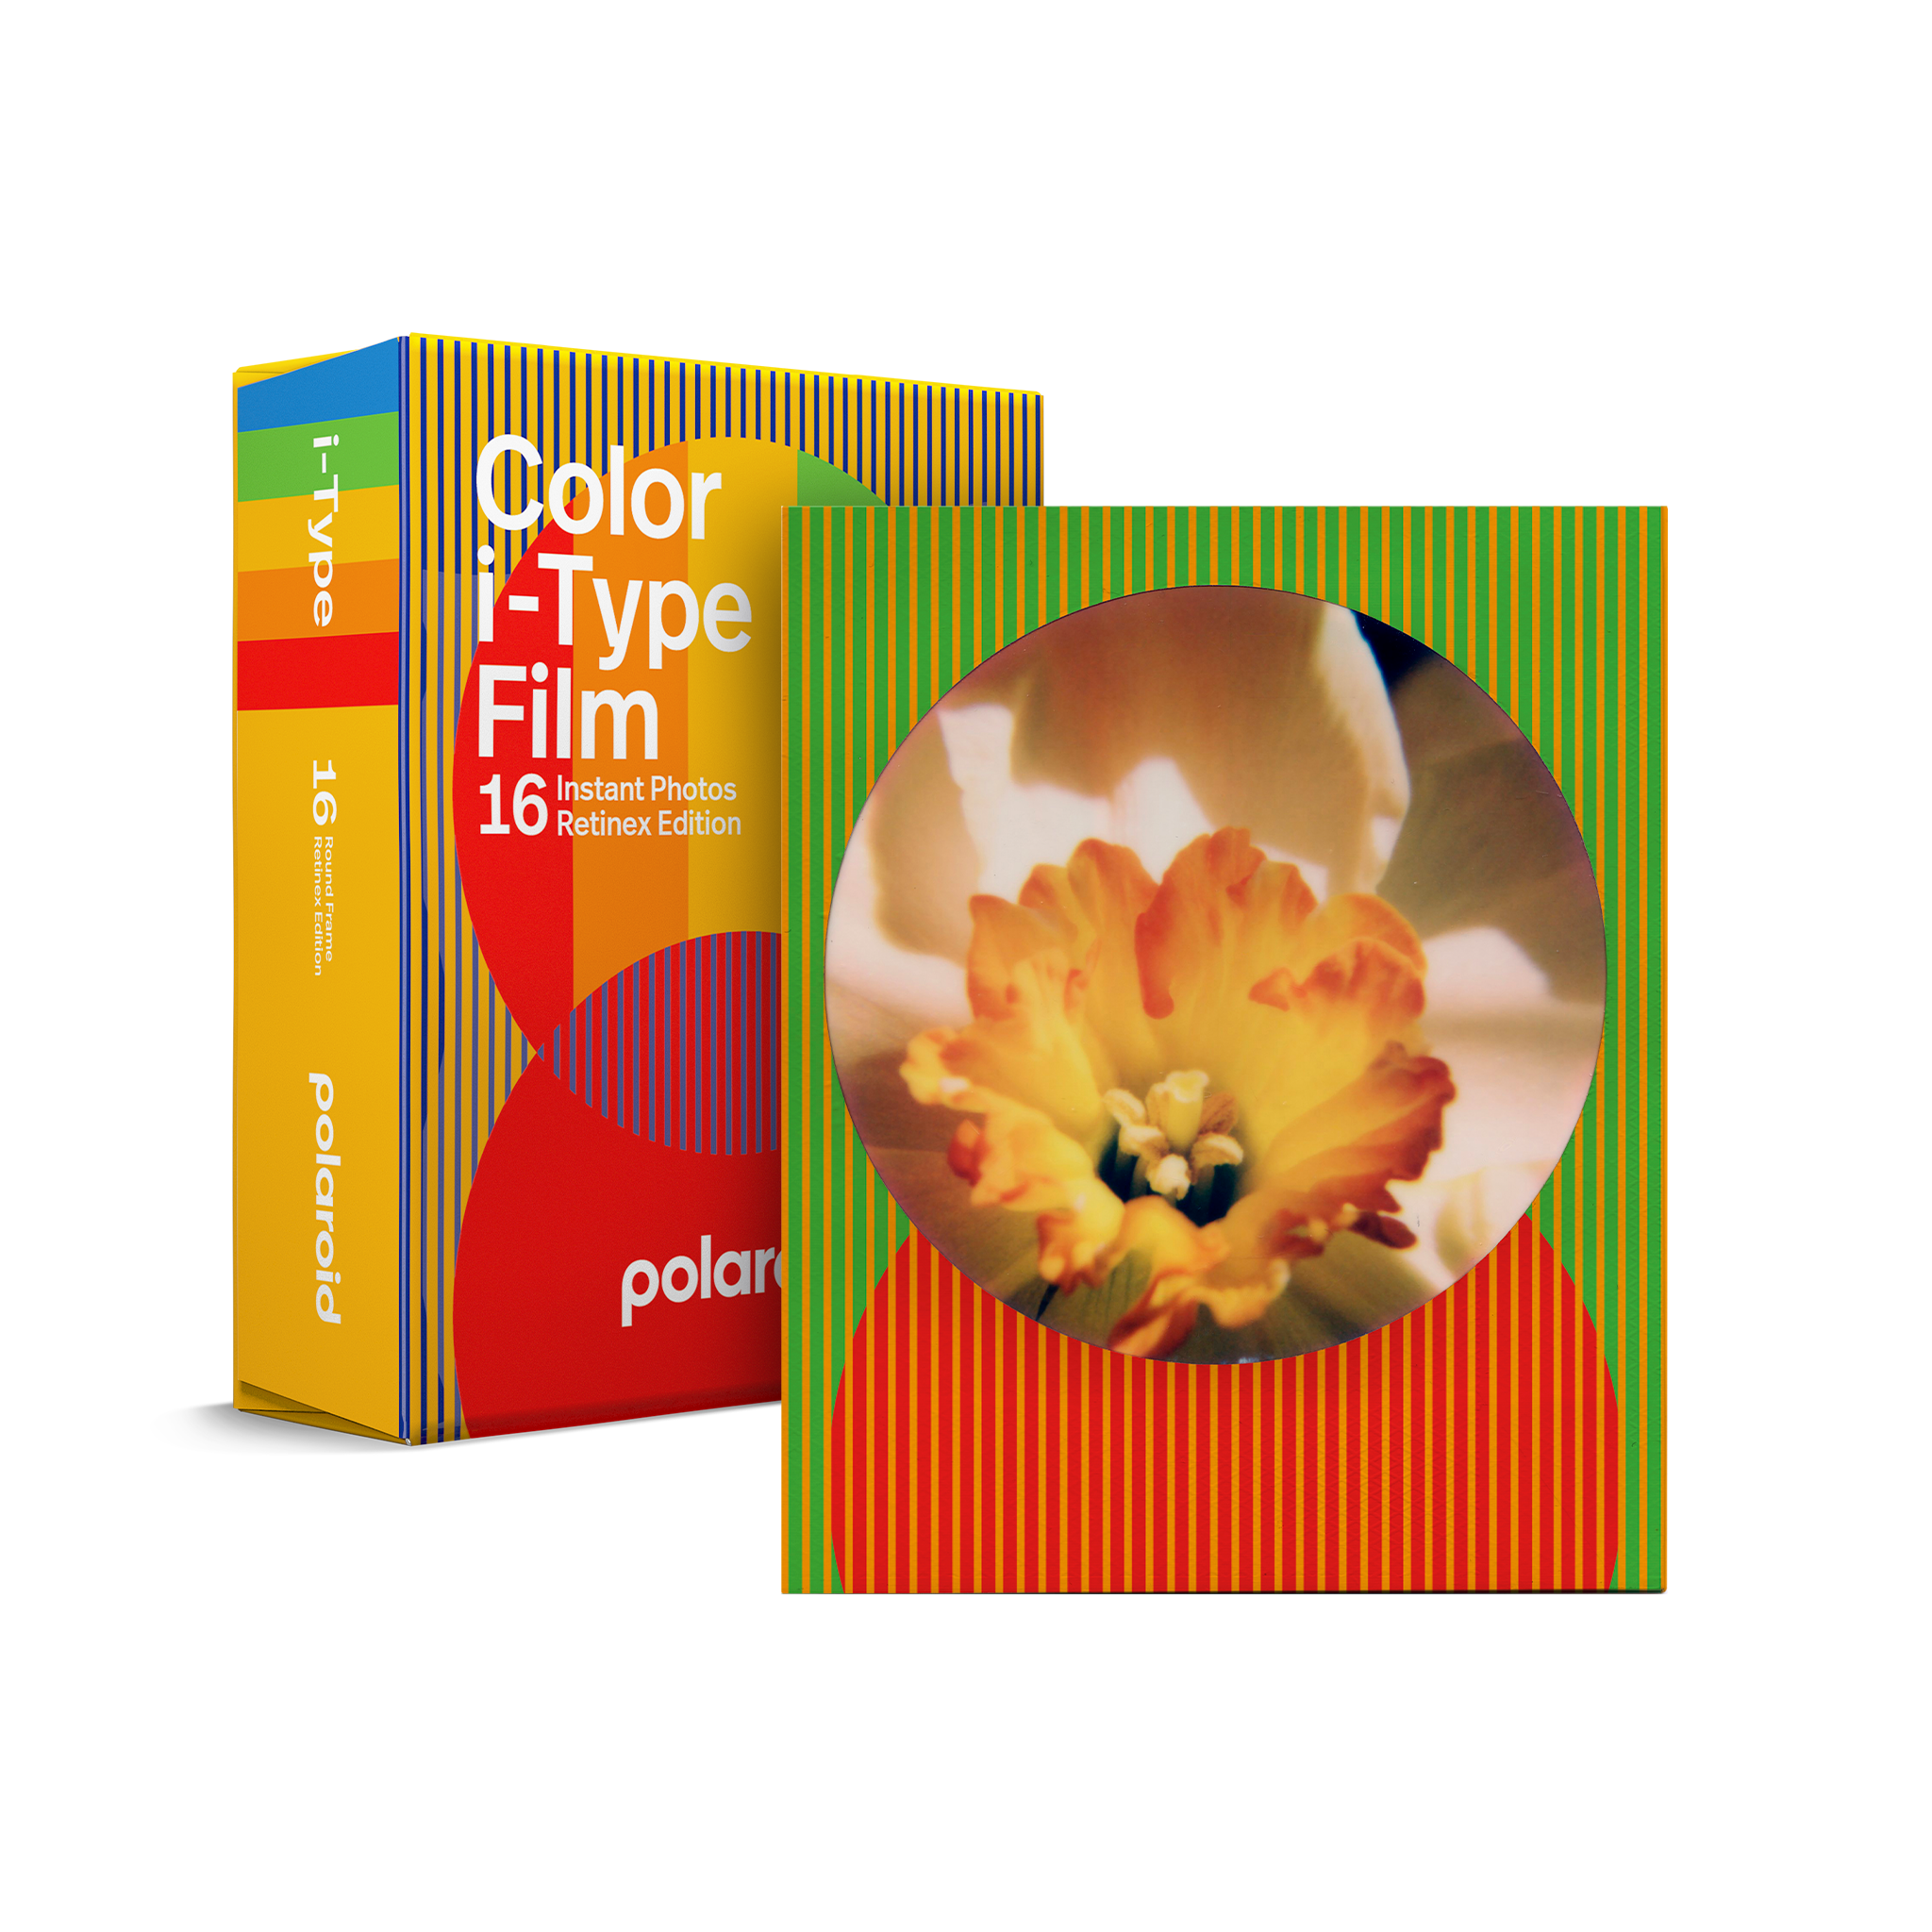 Papier photo instantané POLAROID Film i-Type couleur EditionSummer